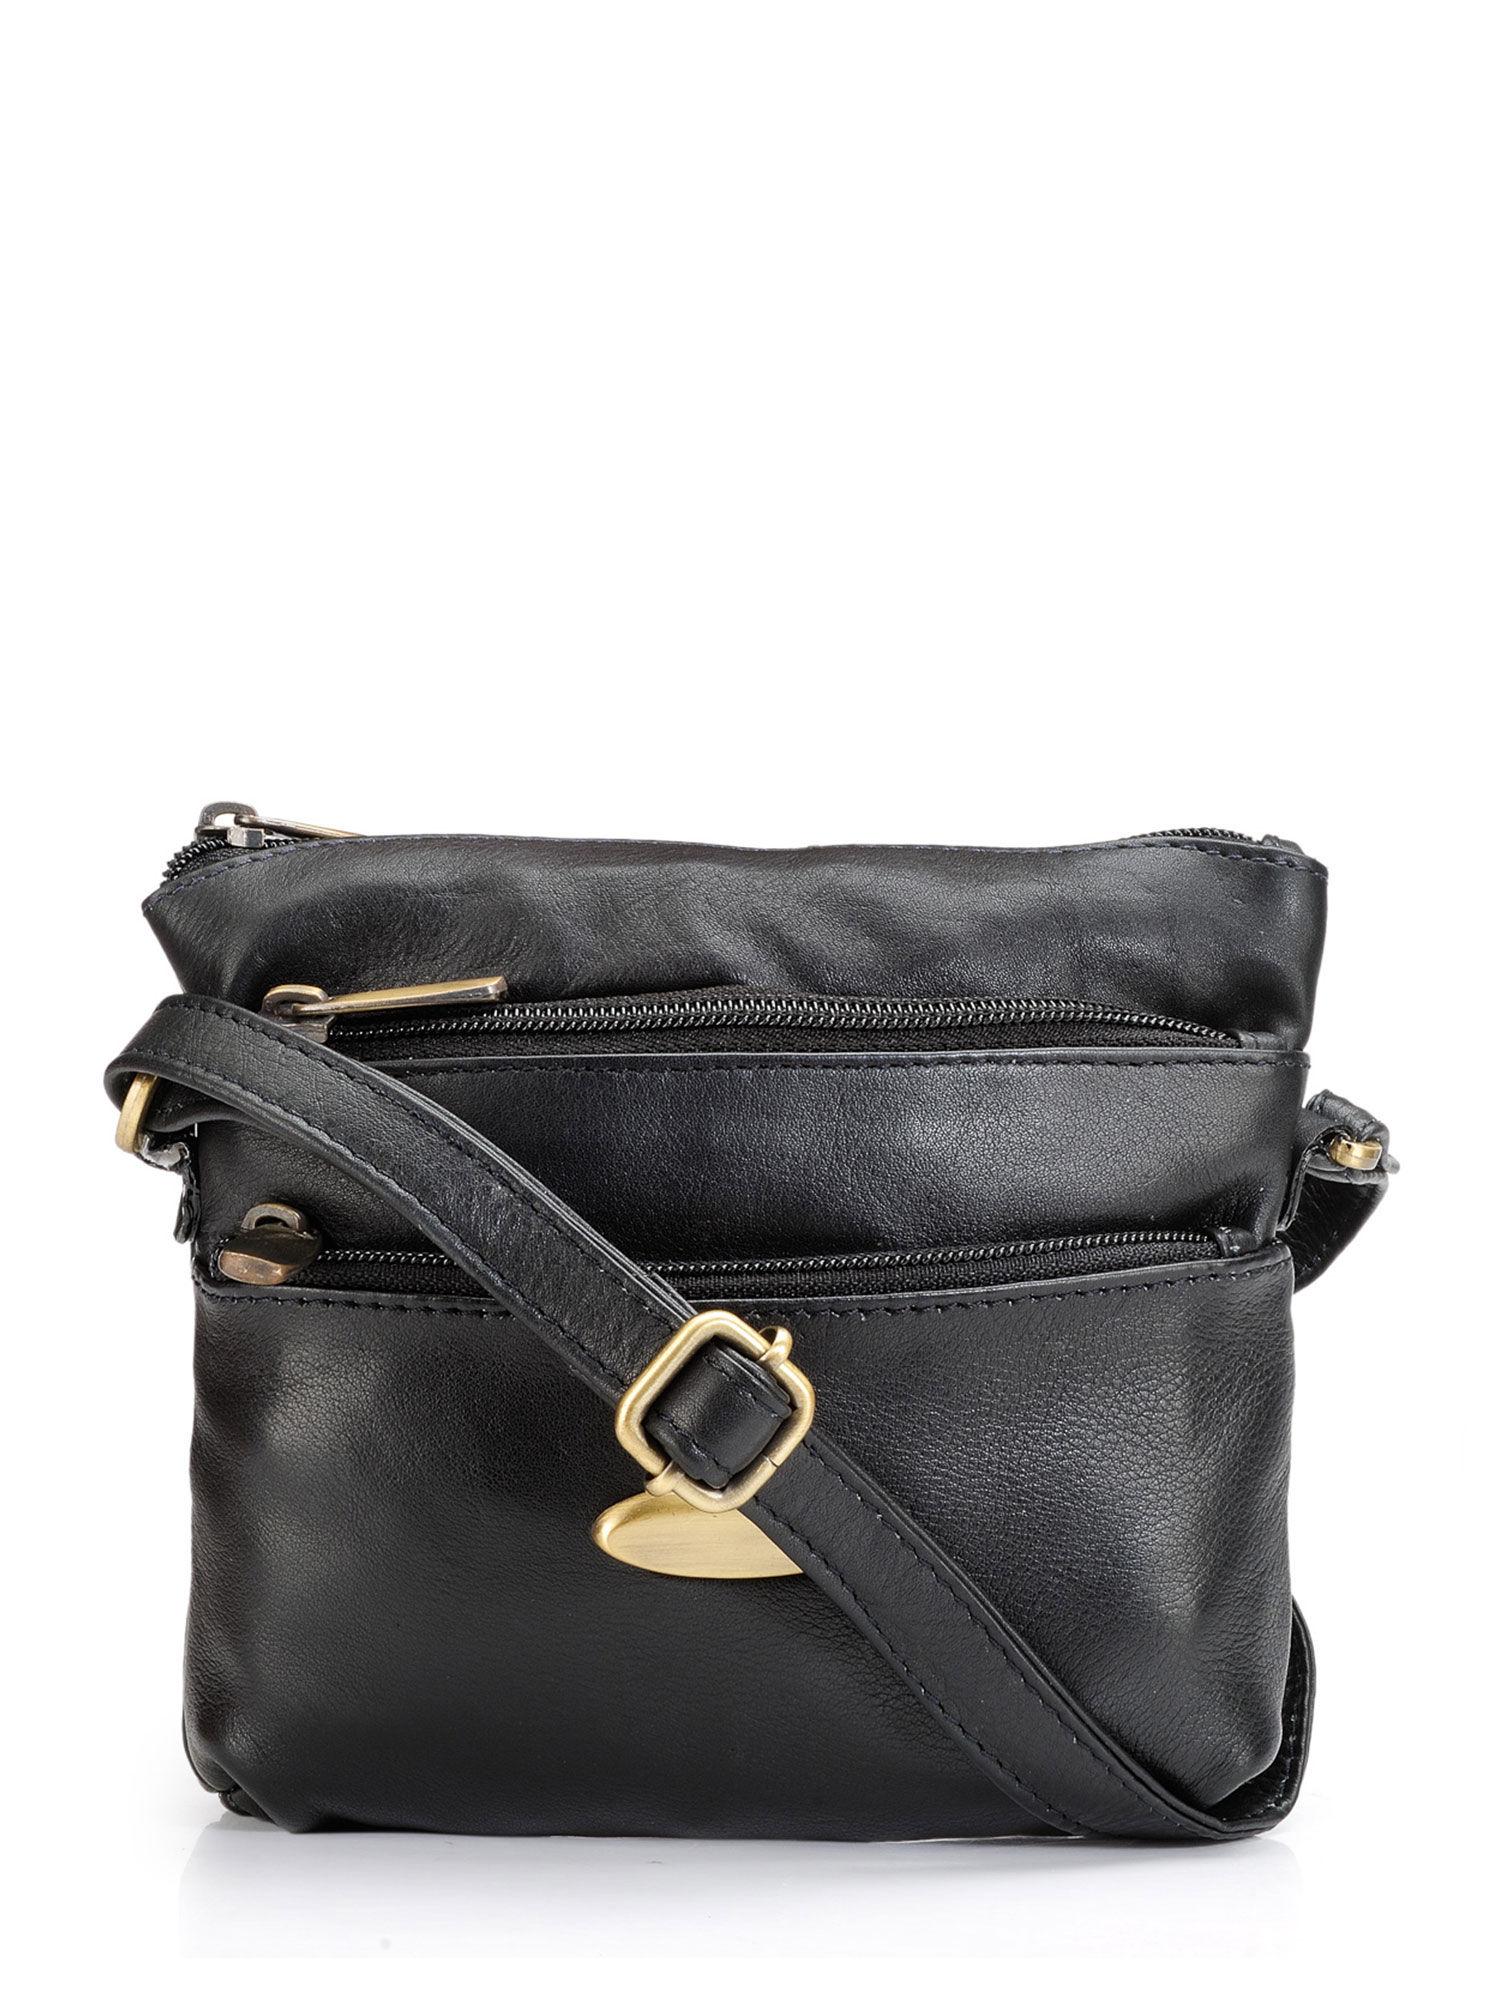 unisex black solid leather sling bag